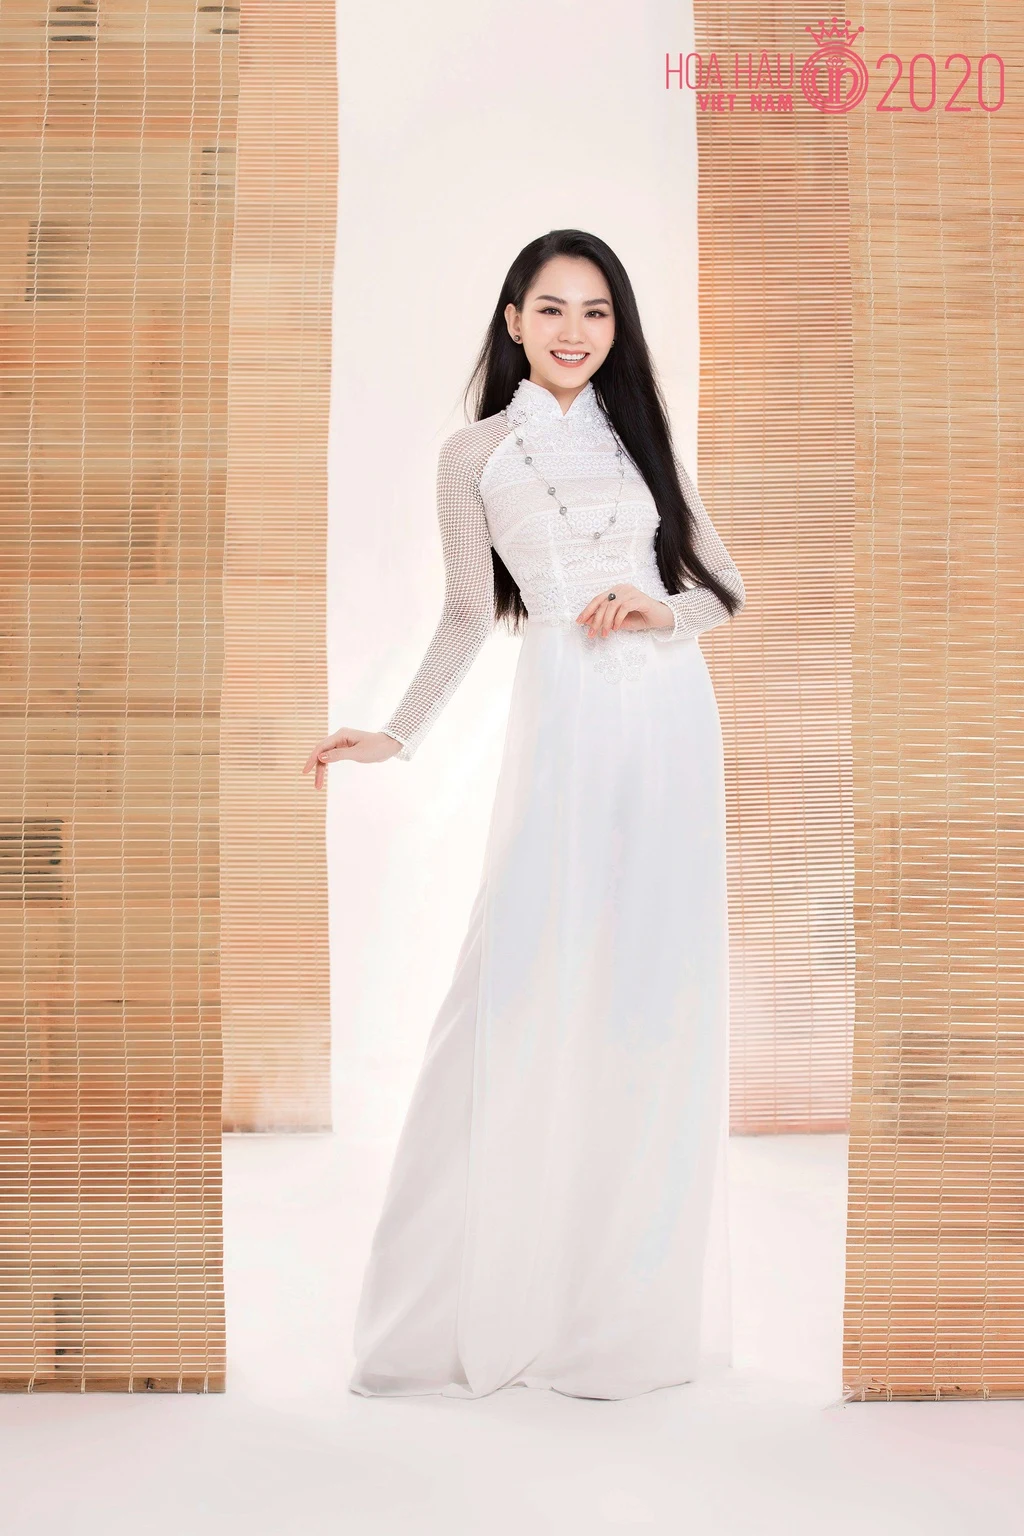 Thí sinh Hoa hậu Việt Nam 2020 khoe sắc với áo dài